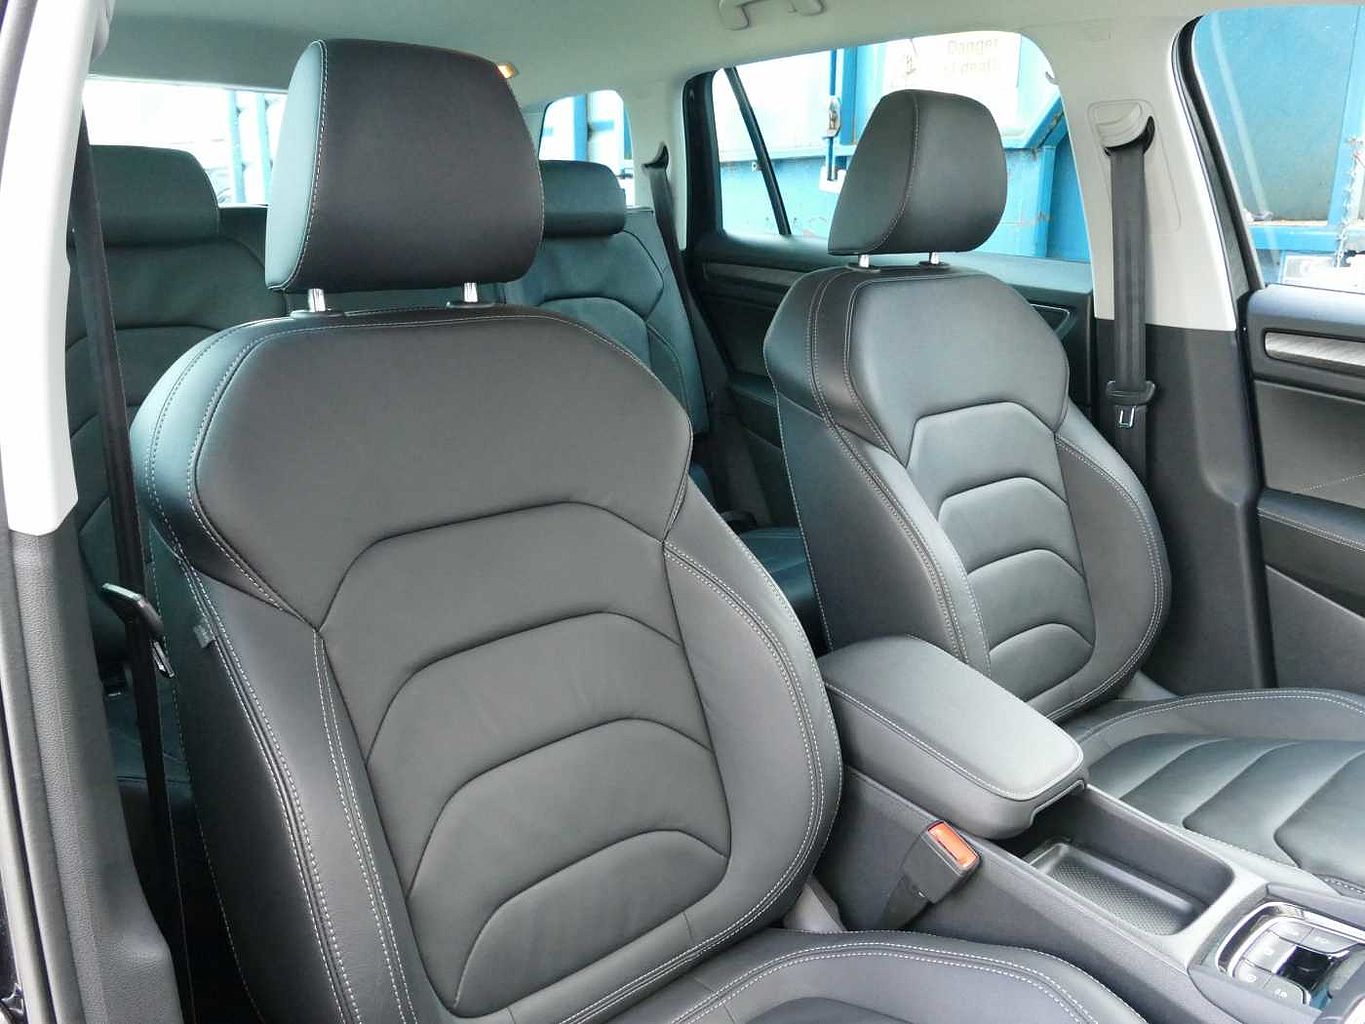 SKODA Kodiaq 2.0 TDI (200ps) SE L Executive (7 Seats) 4x4 Auto/DSG SUV